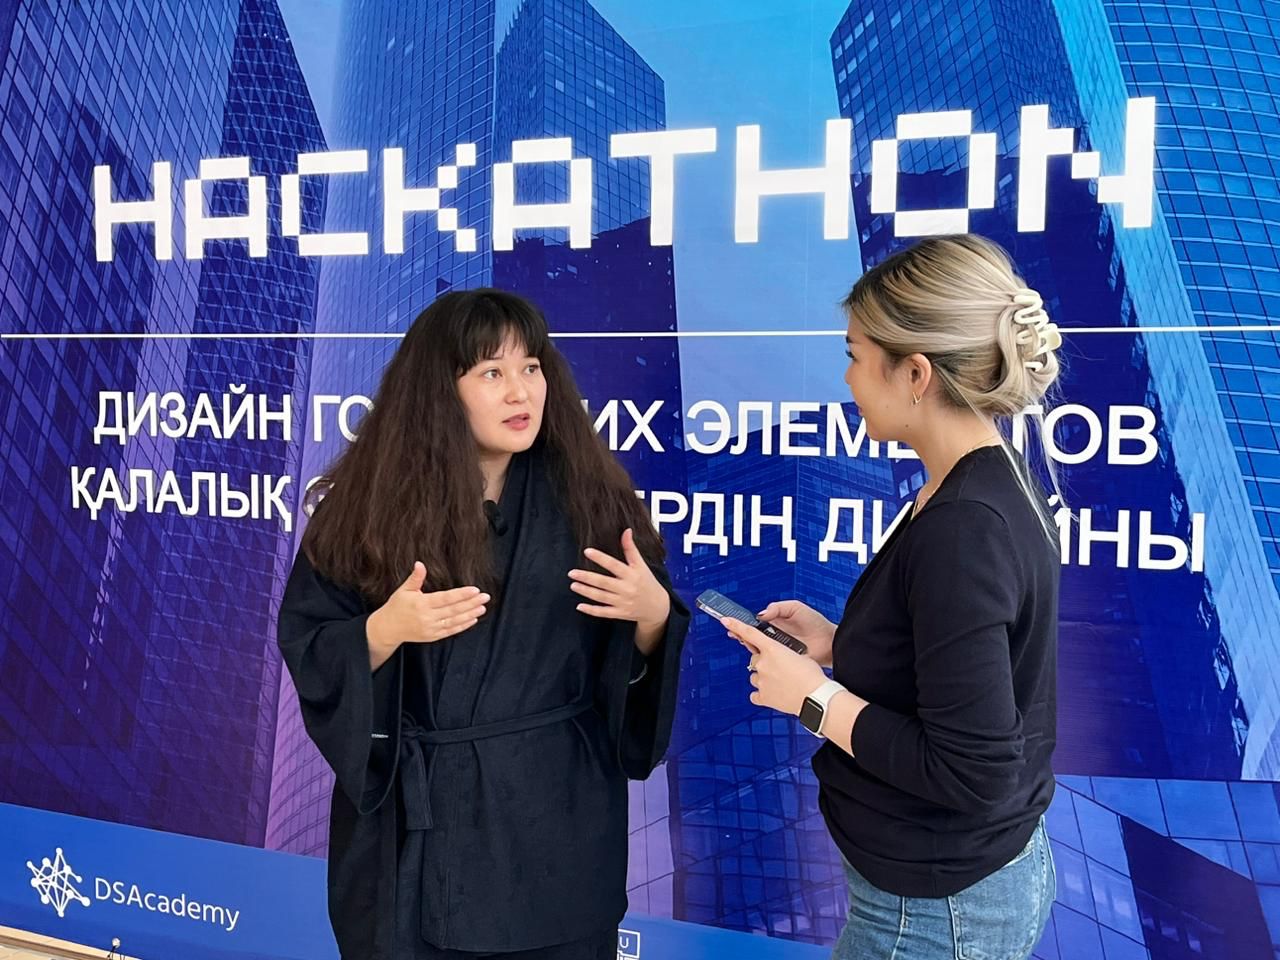 Хакатон по дизайну городских идей провели в Алматы